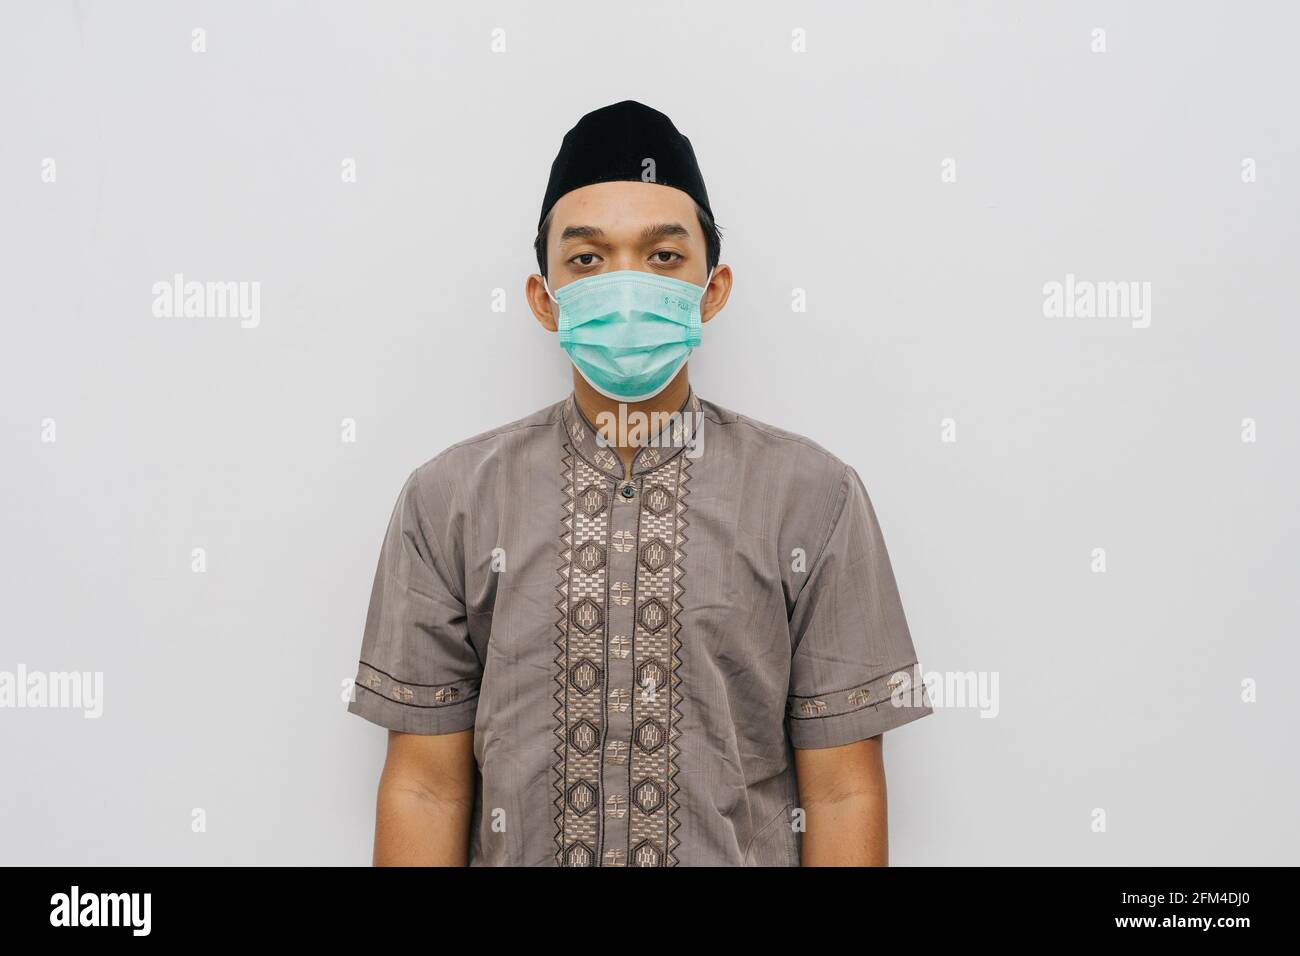 Ritratto di uomo indonesiano indossa maschera medica, camicia musulmana e peci o songkok per fare la preghiera salat Foto Stock